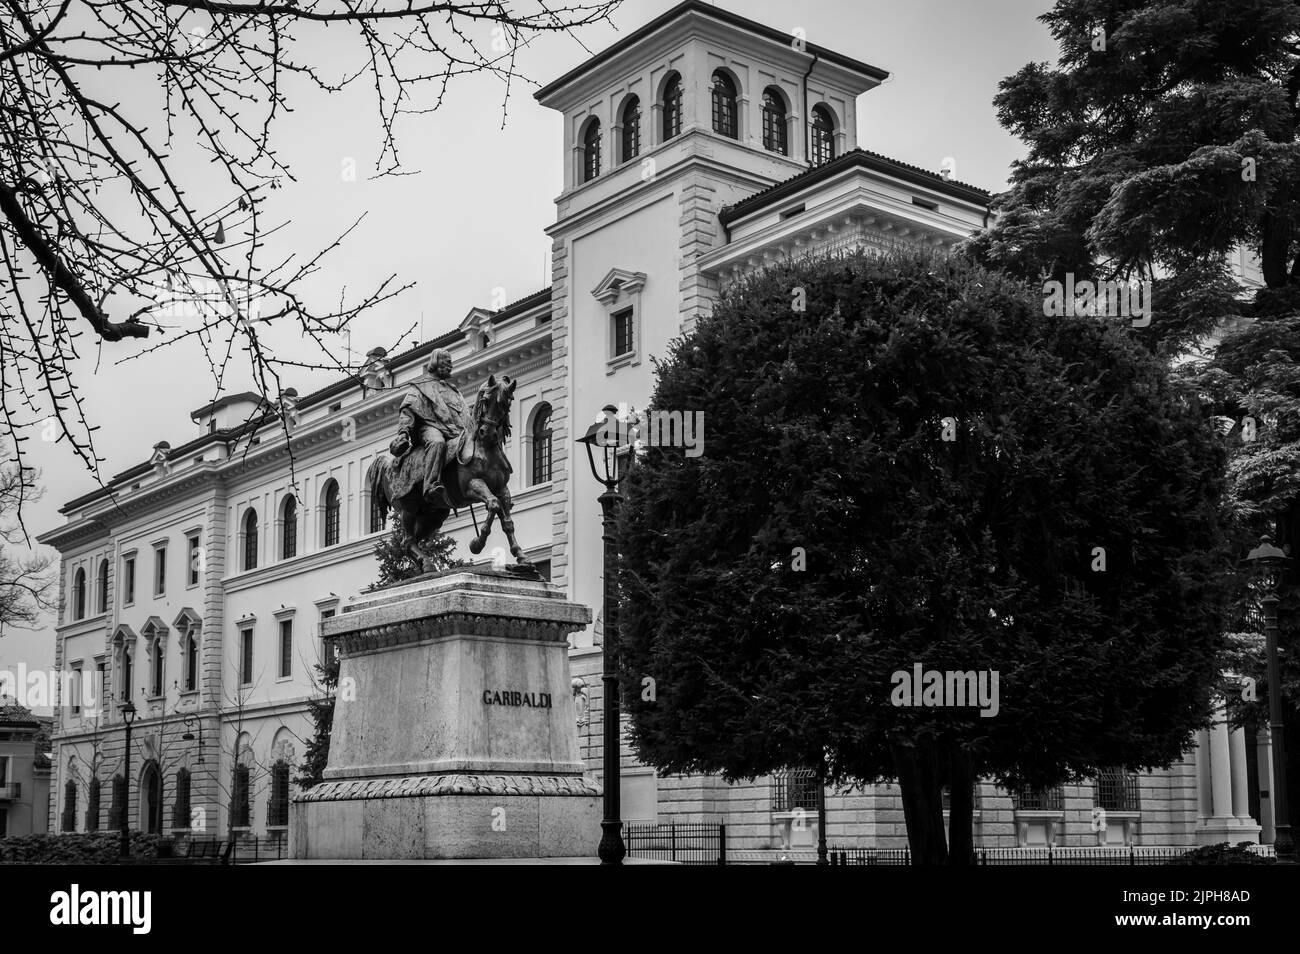 Statua equestre a Giuseppe Garibaldi, Verona, regione Veneto - Italia settentrionale, Europa - 28 dicembre 2021 Foto Stock